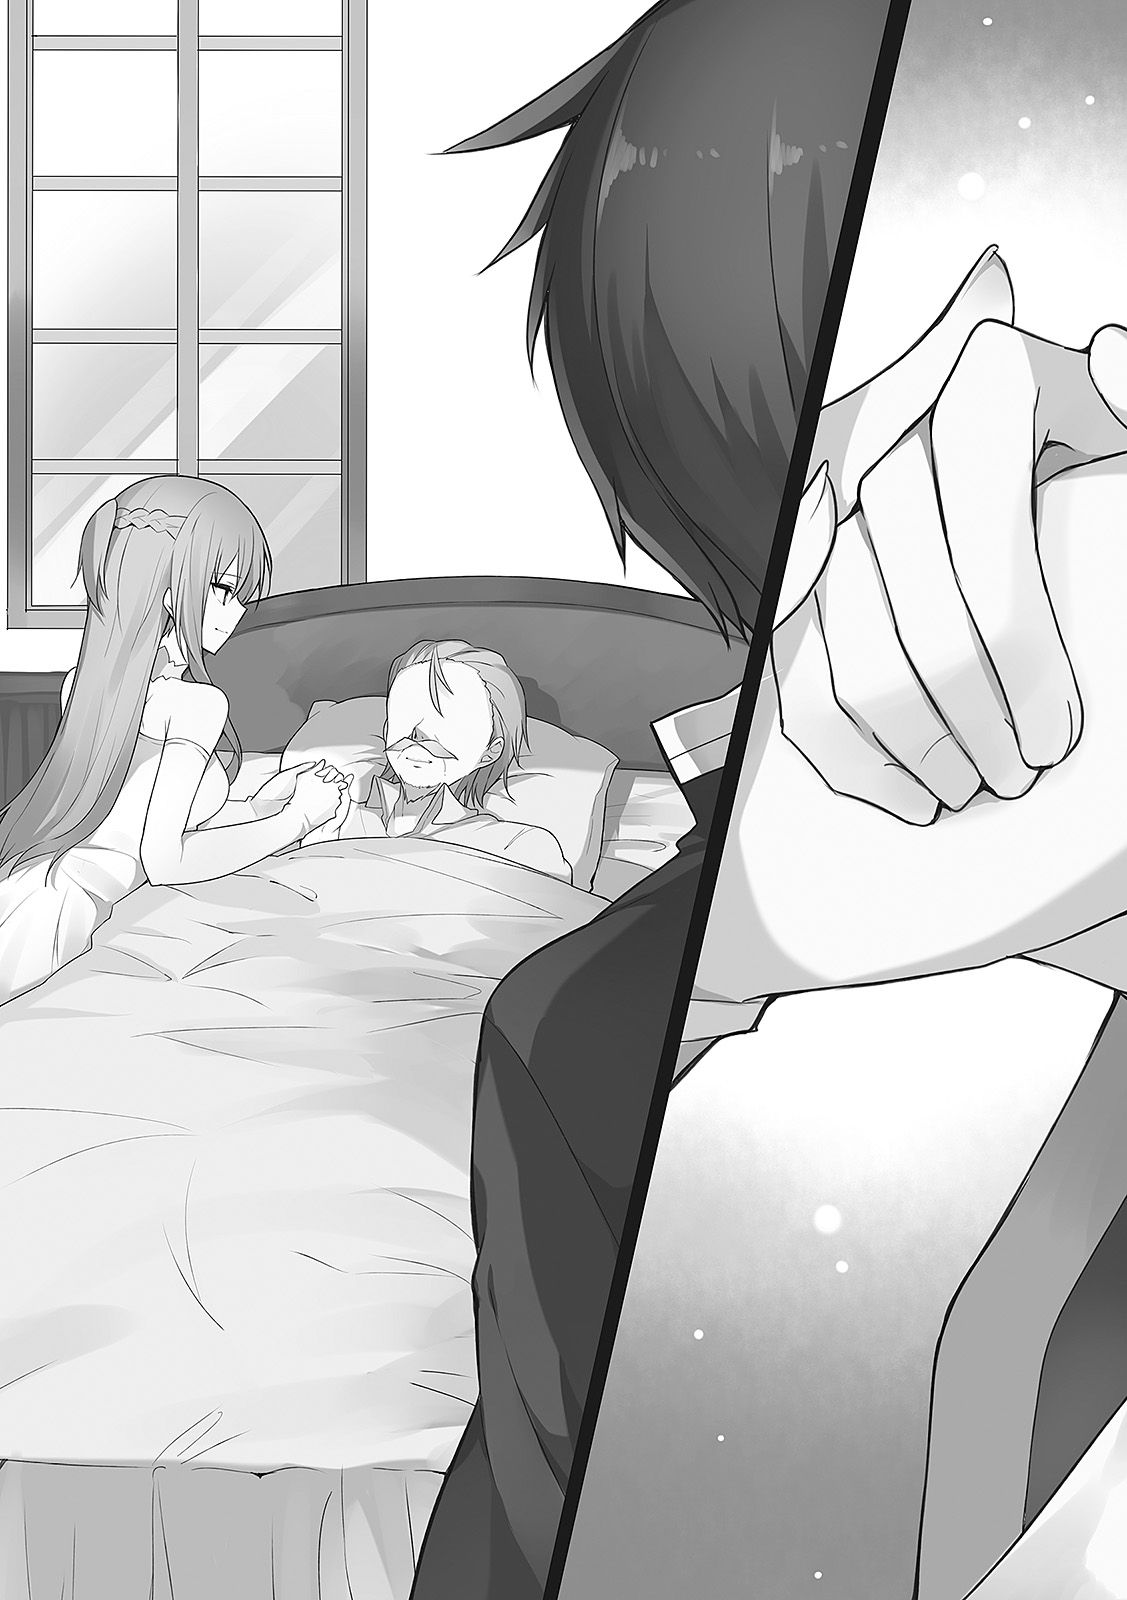 Here we have quality Konosuba posts - #𝐍𝐨𝐭𝐊𝐨𝐧𝐨𝐬𝐮𝐛𝐚  #𝐇𝐰𝐇_𝐀𝐫𝐭 Kiểu tóc Sau một hiệp hardcore thì thấy bạn gái nằm trên  giường, không một mảnh vải mồ hôi nhễ nhại, tóc rối